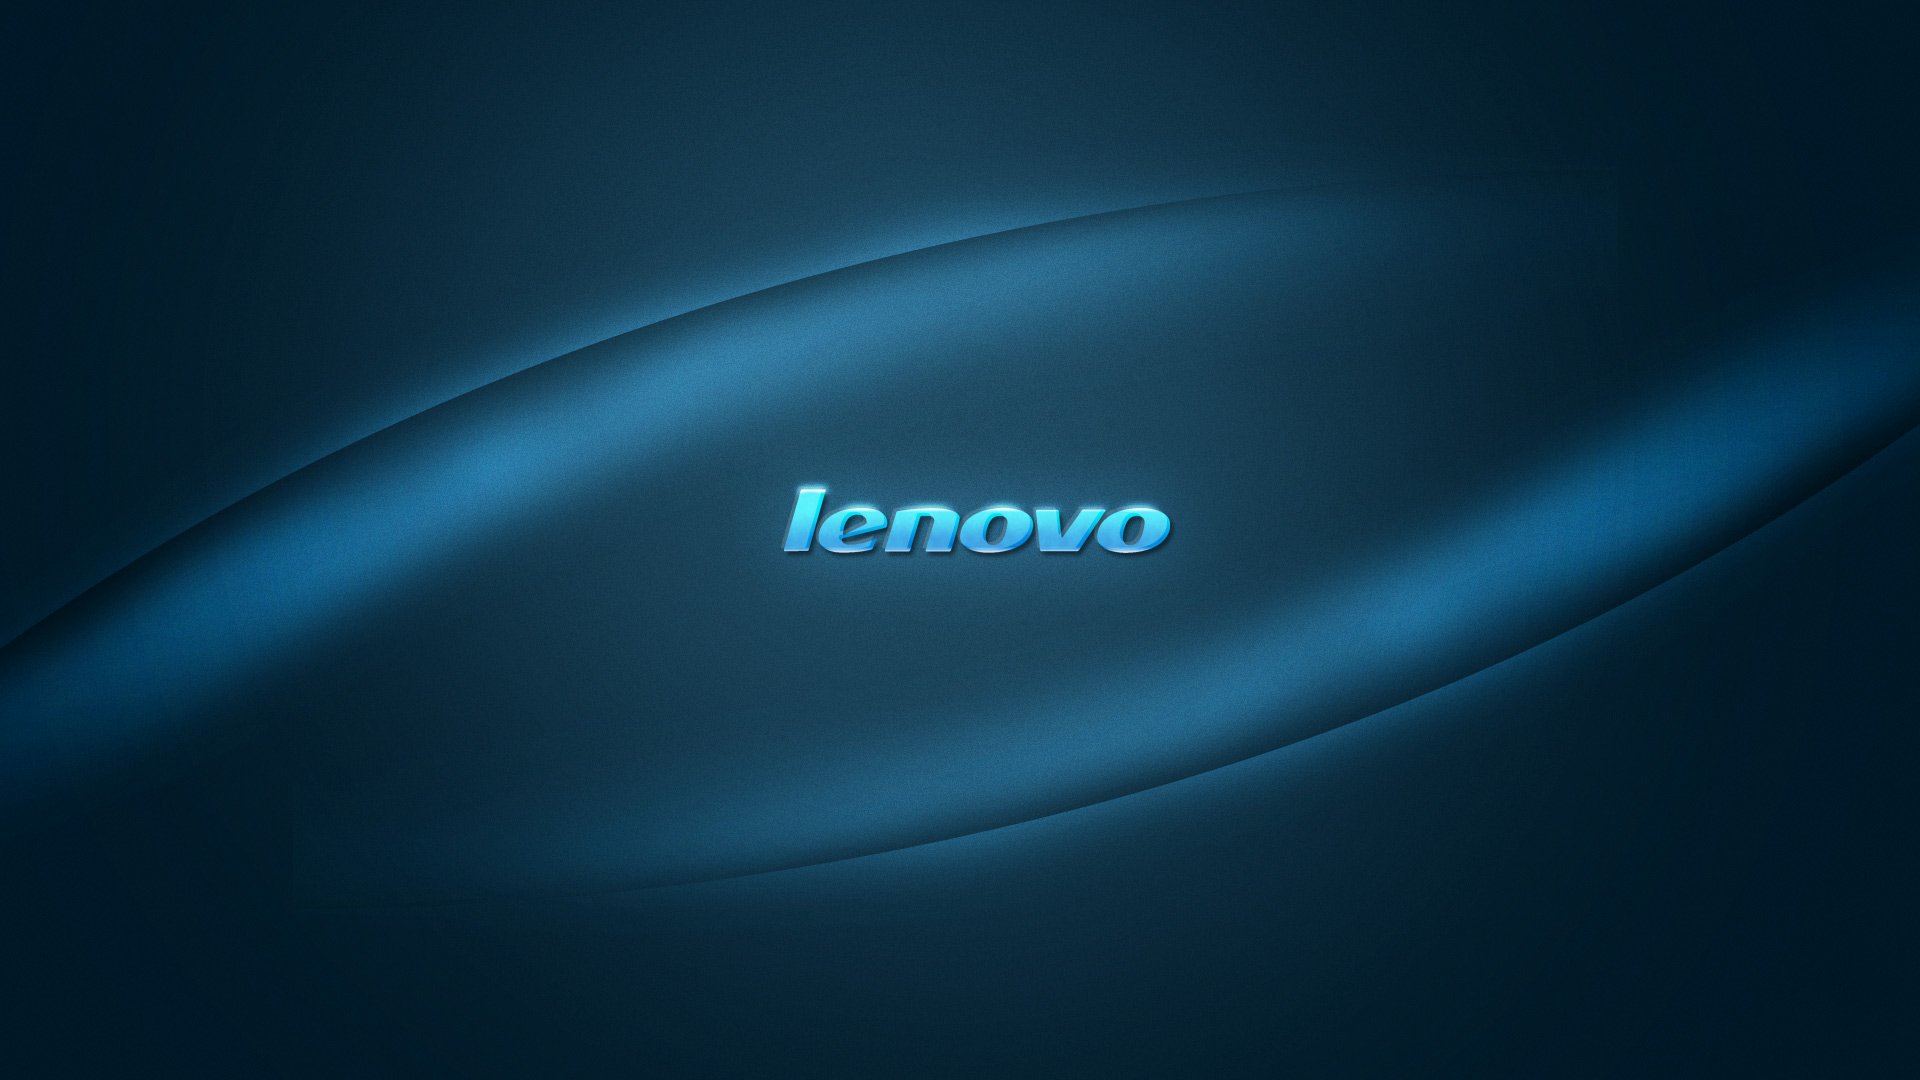 Lenovo Wallpaper Background2 - Lenovo , HD Wallpaper & Backgrounds